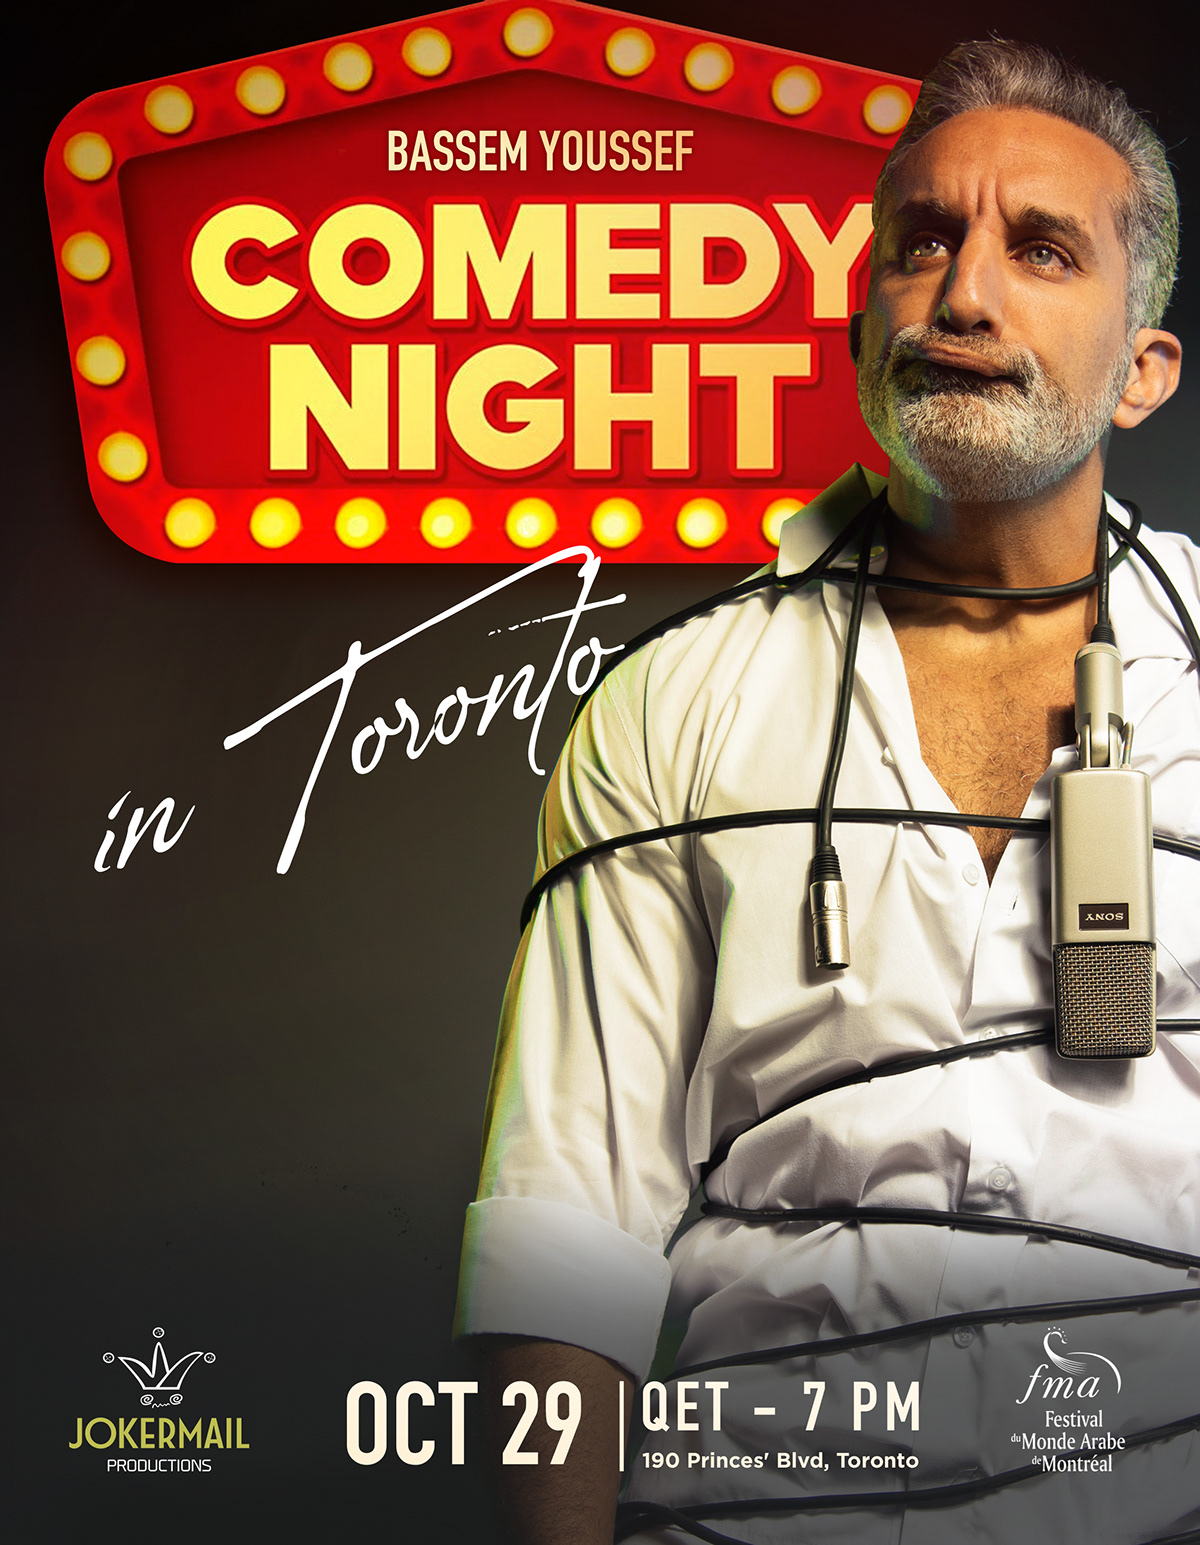 bassem youssef  Canada comedy  Comedy show Poster Design Toronto